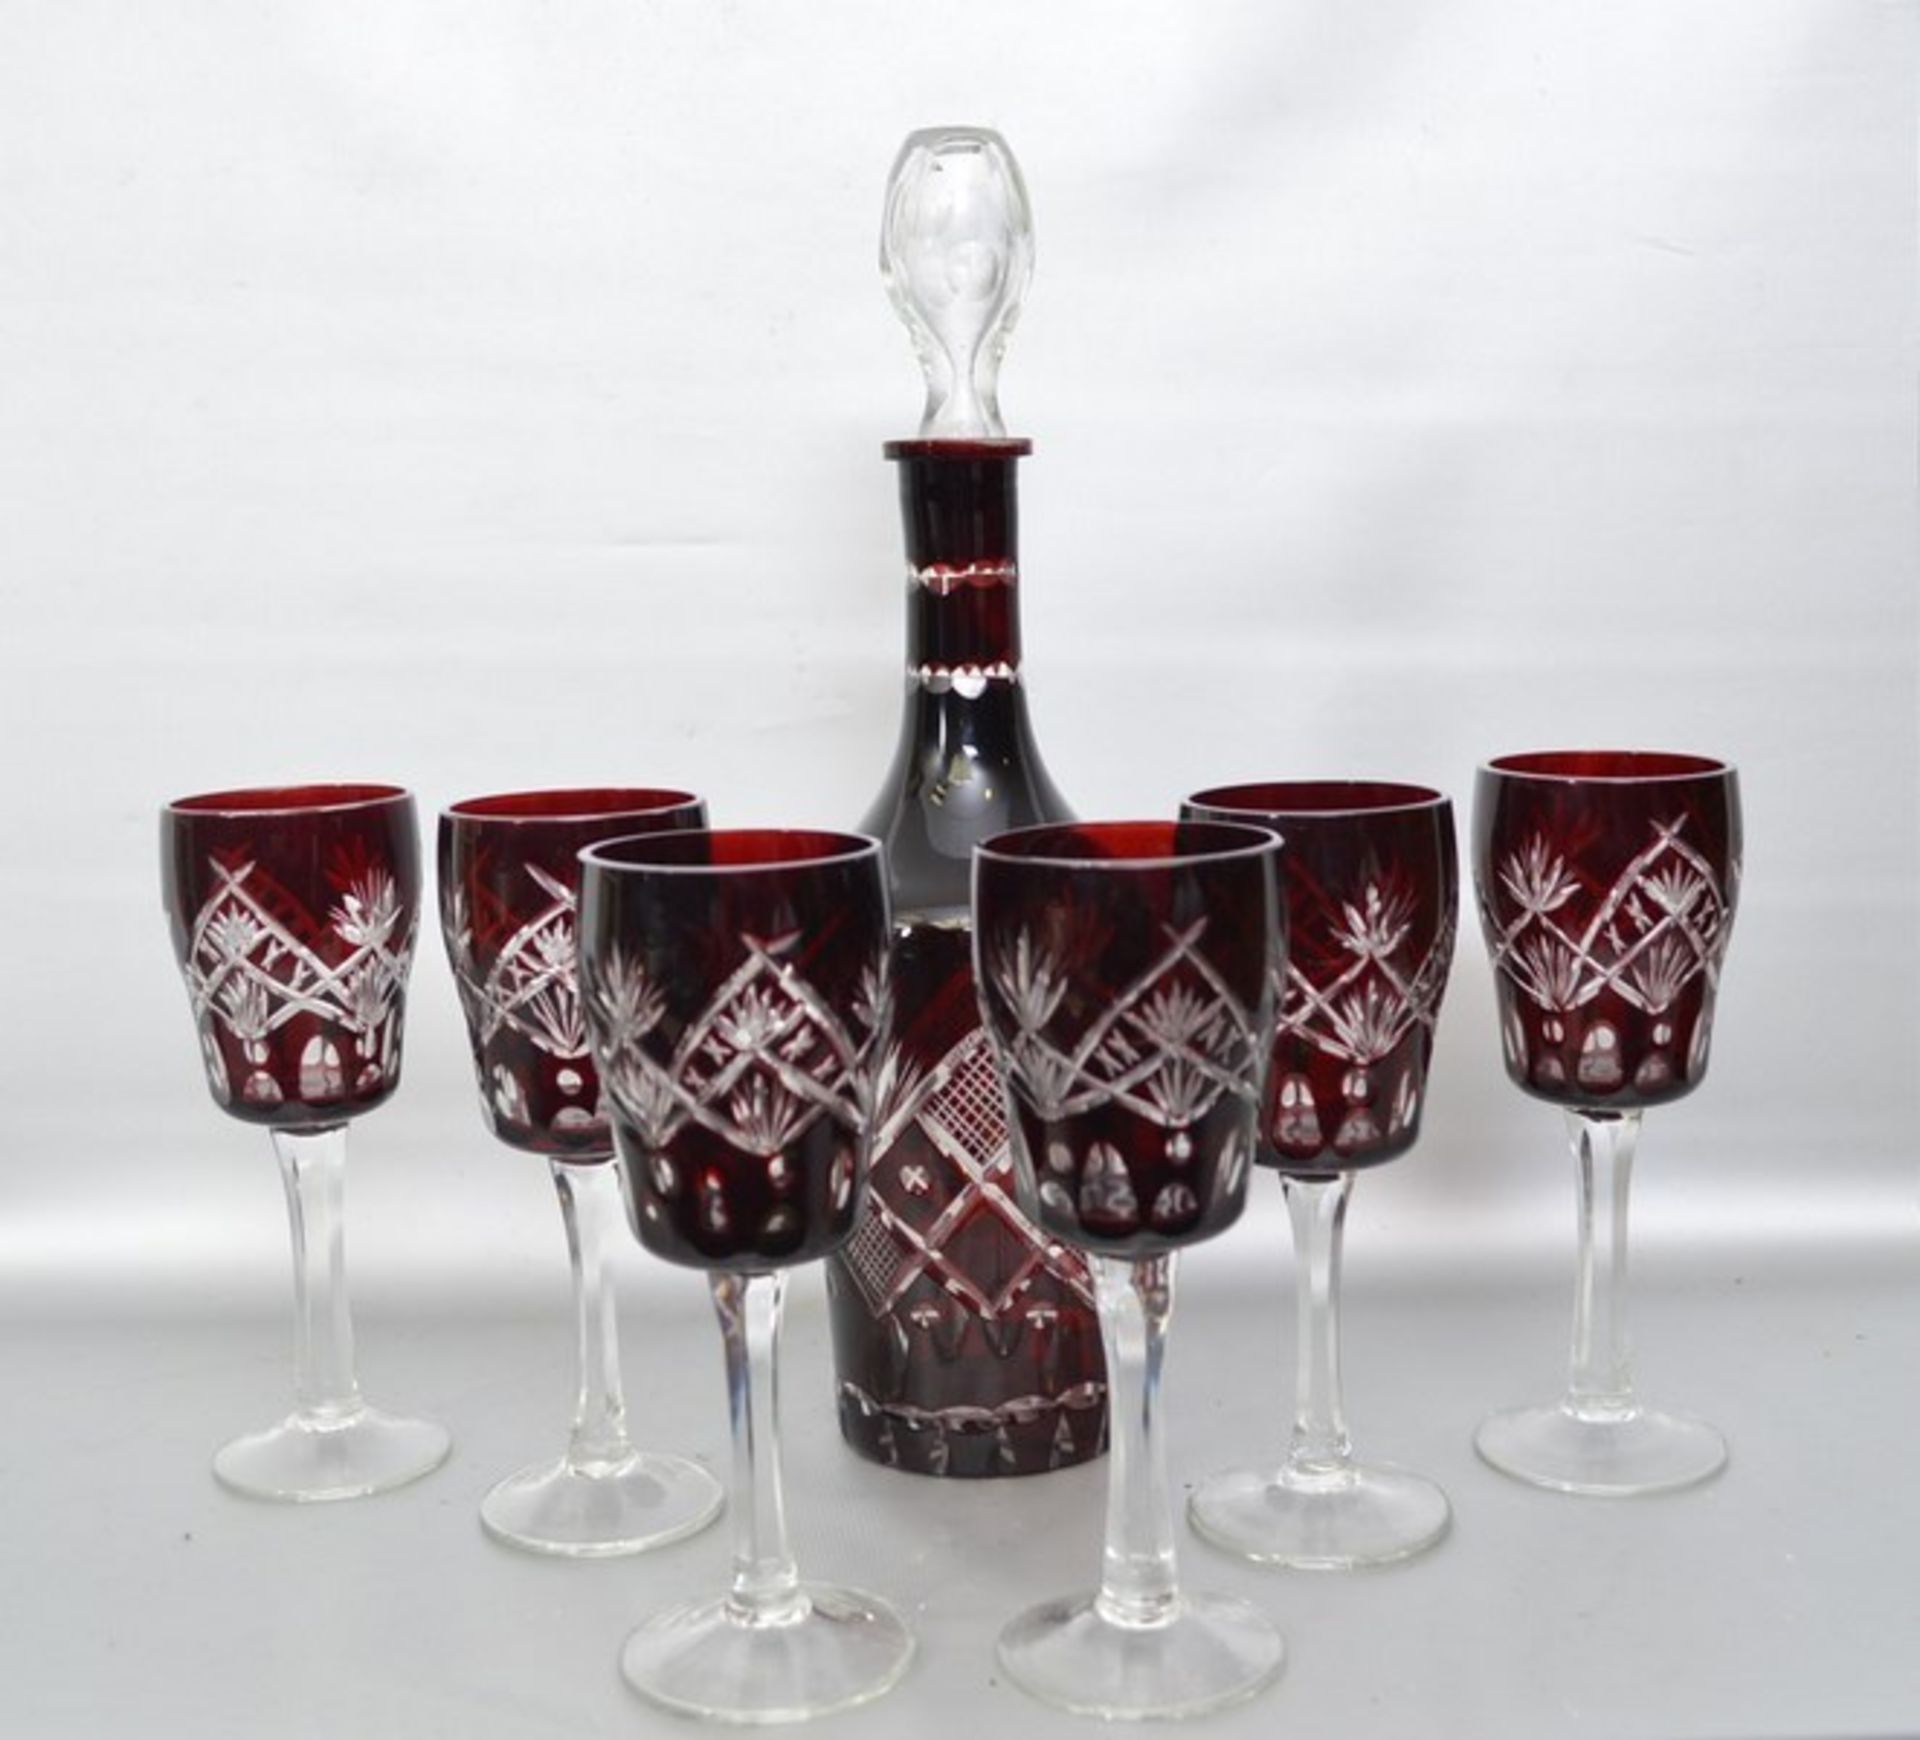 Karaffe und sechs Gläser farbl. Glas, geschliffen verziert, mit sechs Weingläsern, mit rotem